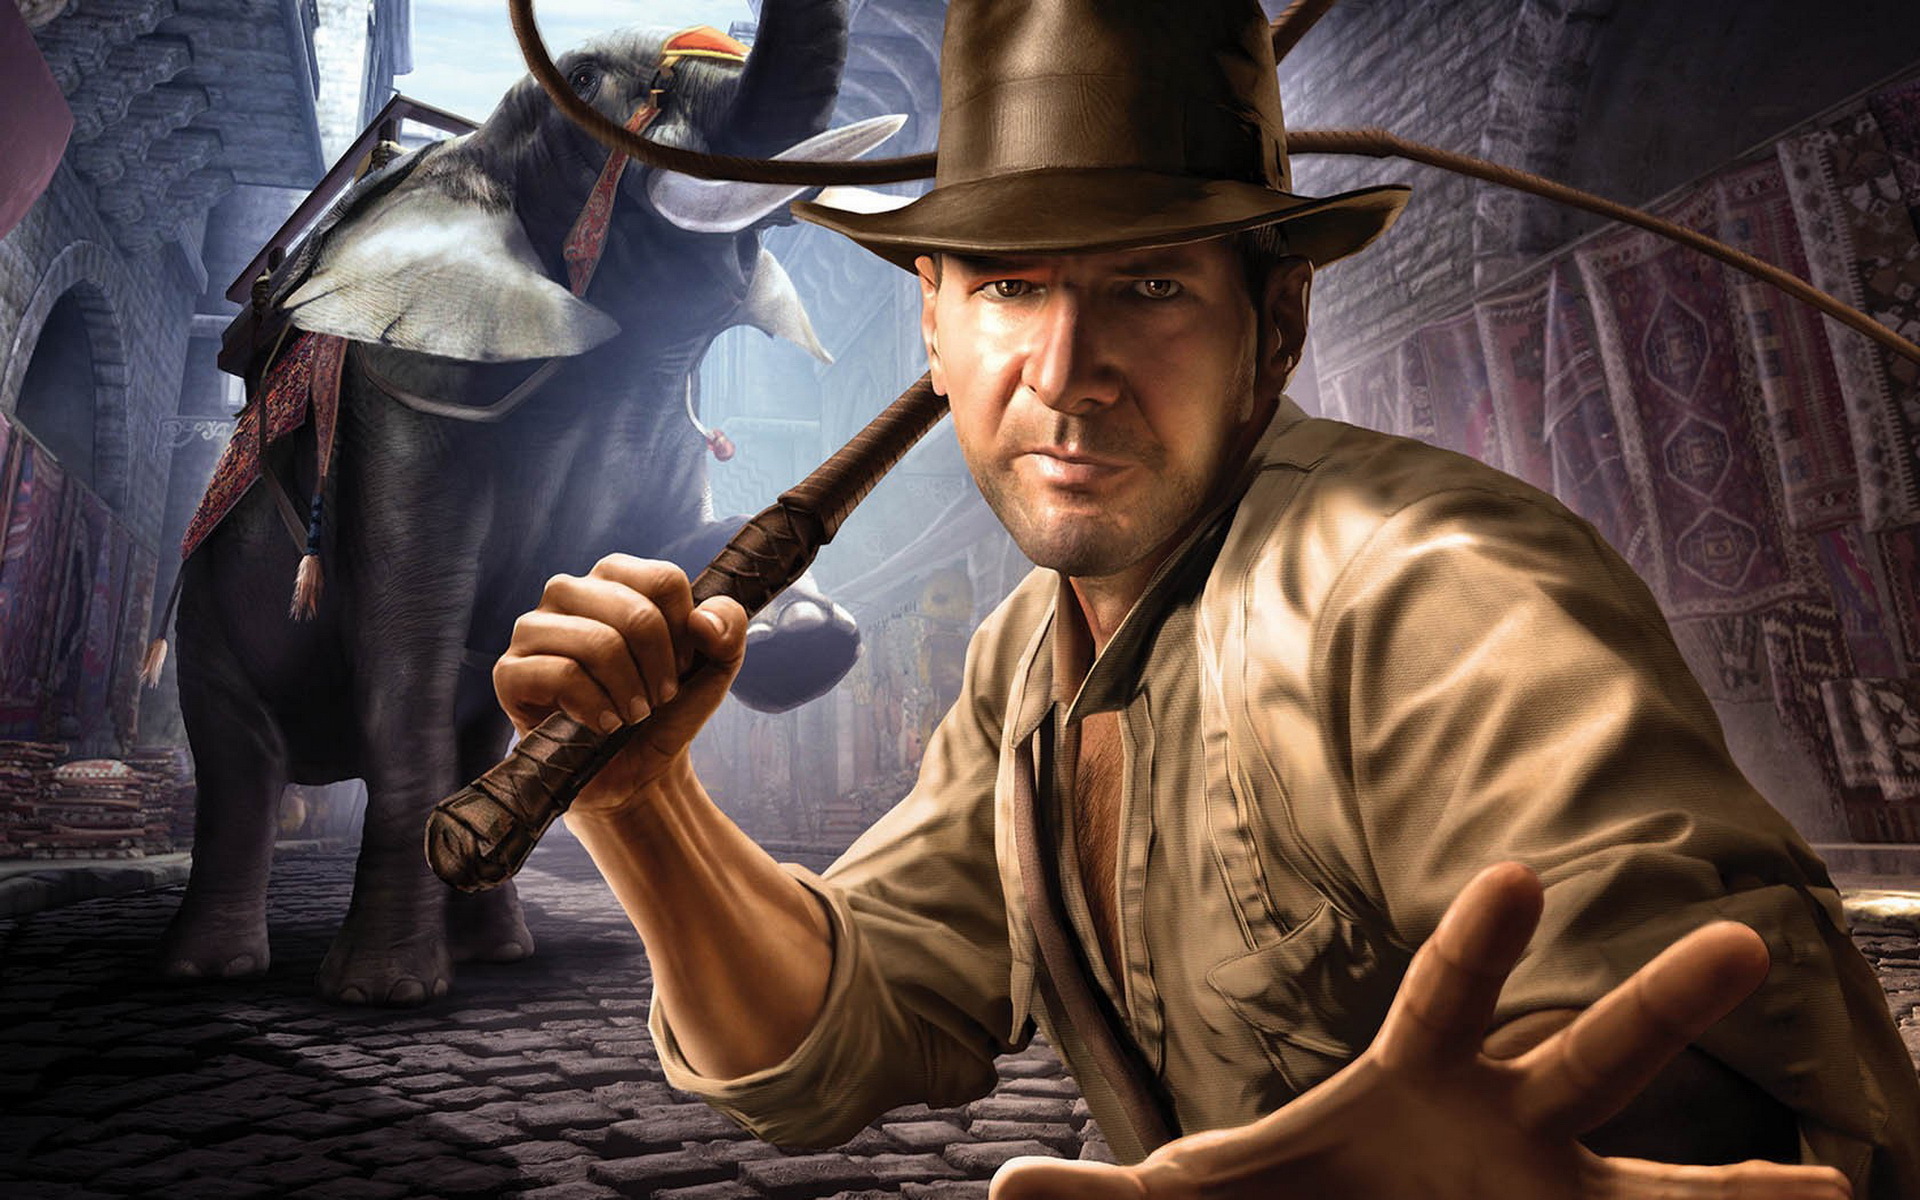 Популярные заставки и фоны Индиана Джонс (Indiana Jones) на компьютер